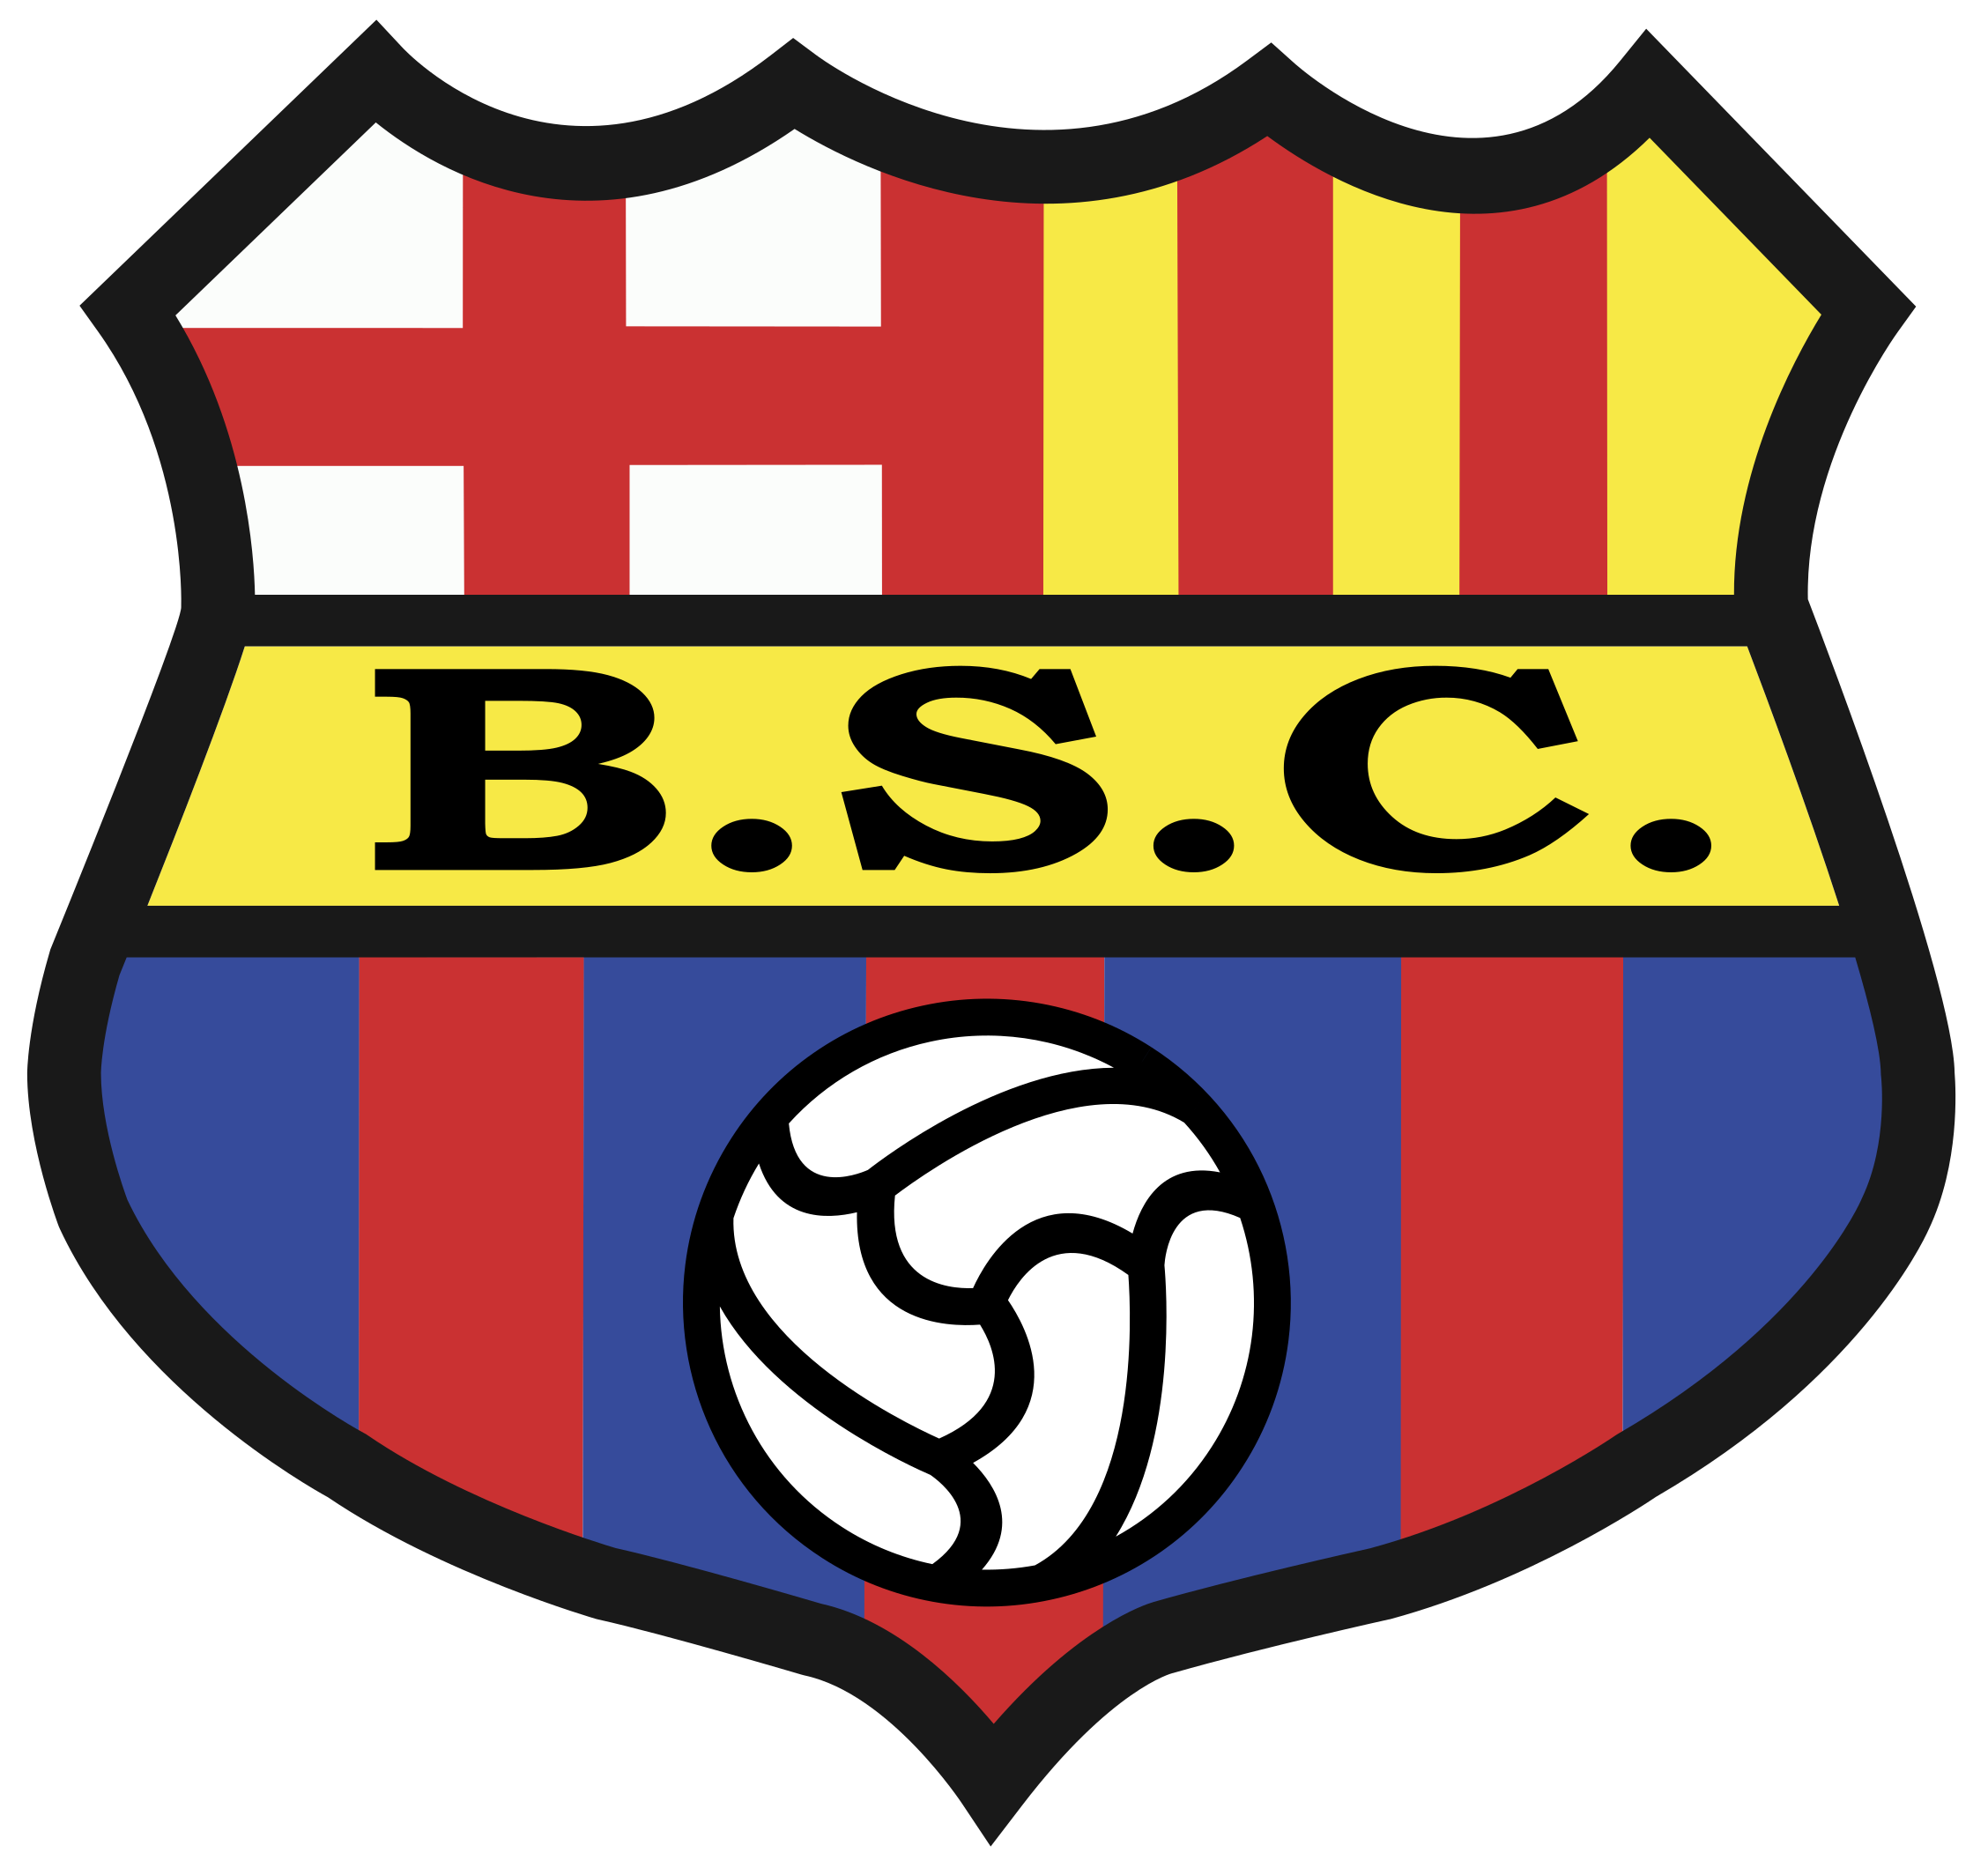 Barcelona SC vs Universidad Catolica Prediction: Barcelona SC in Good Shape to Win